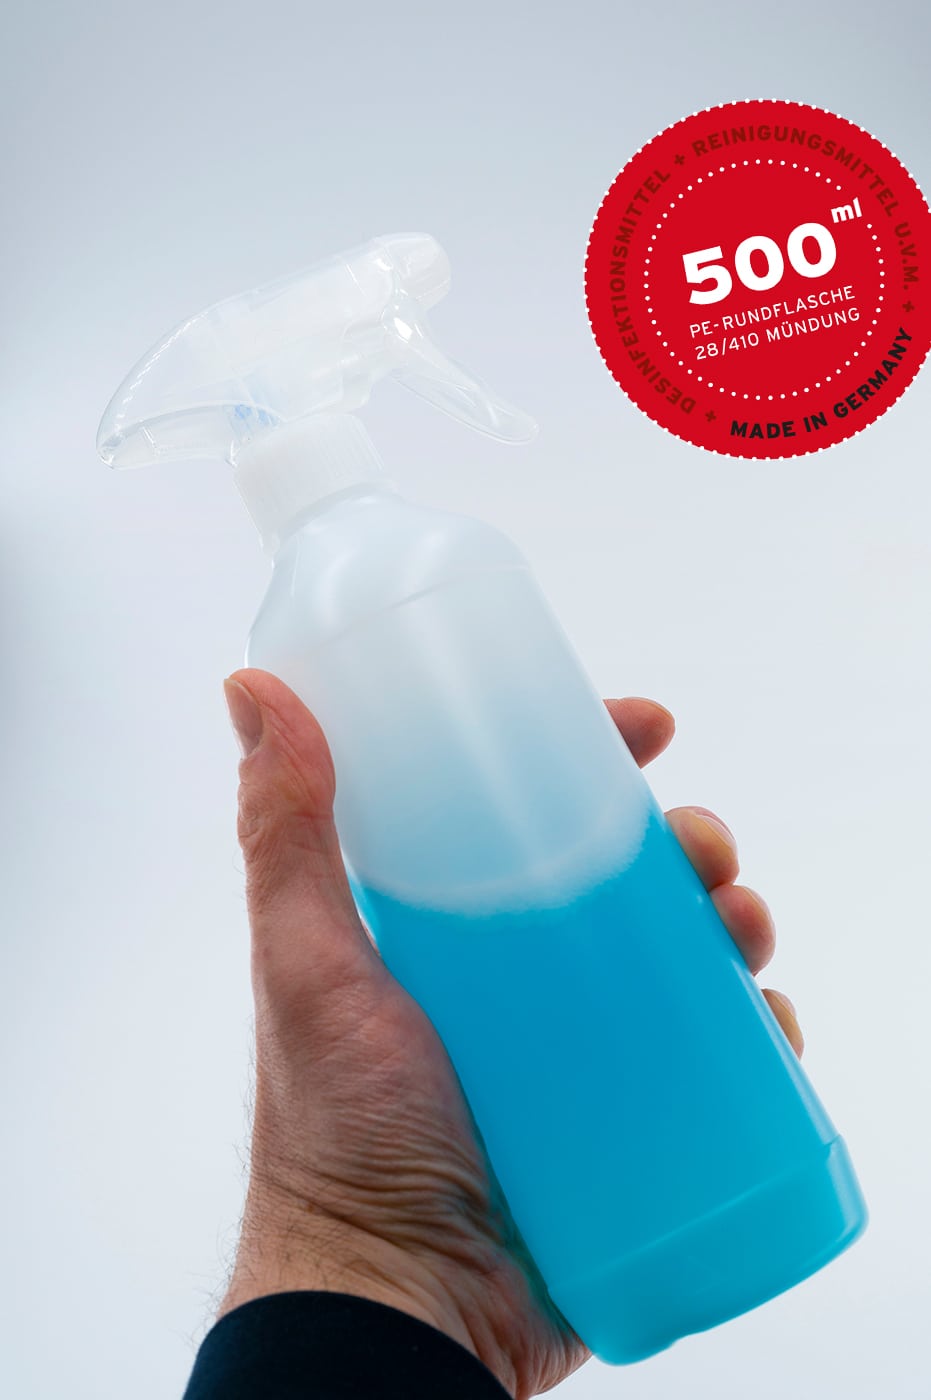 Stabile Kunststoffflasche Rundflasche 500ml kaufen. Für Desinfektionsmittel, Reinigungsmittel, u.v.m. (Schraubverschluss, Pumpdosierer, Sprühpistole, ...) . WEDTHOFF Industrieverpackungen